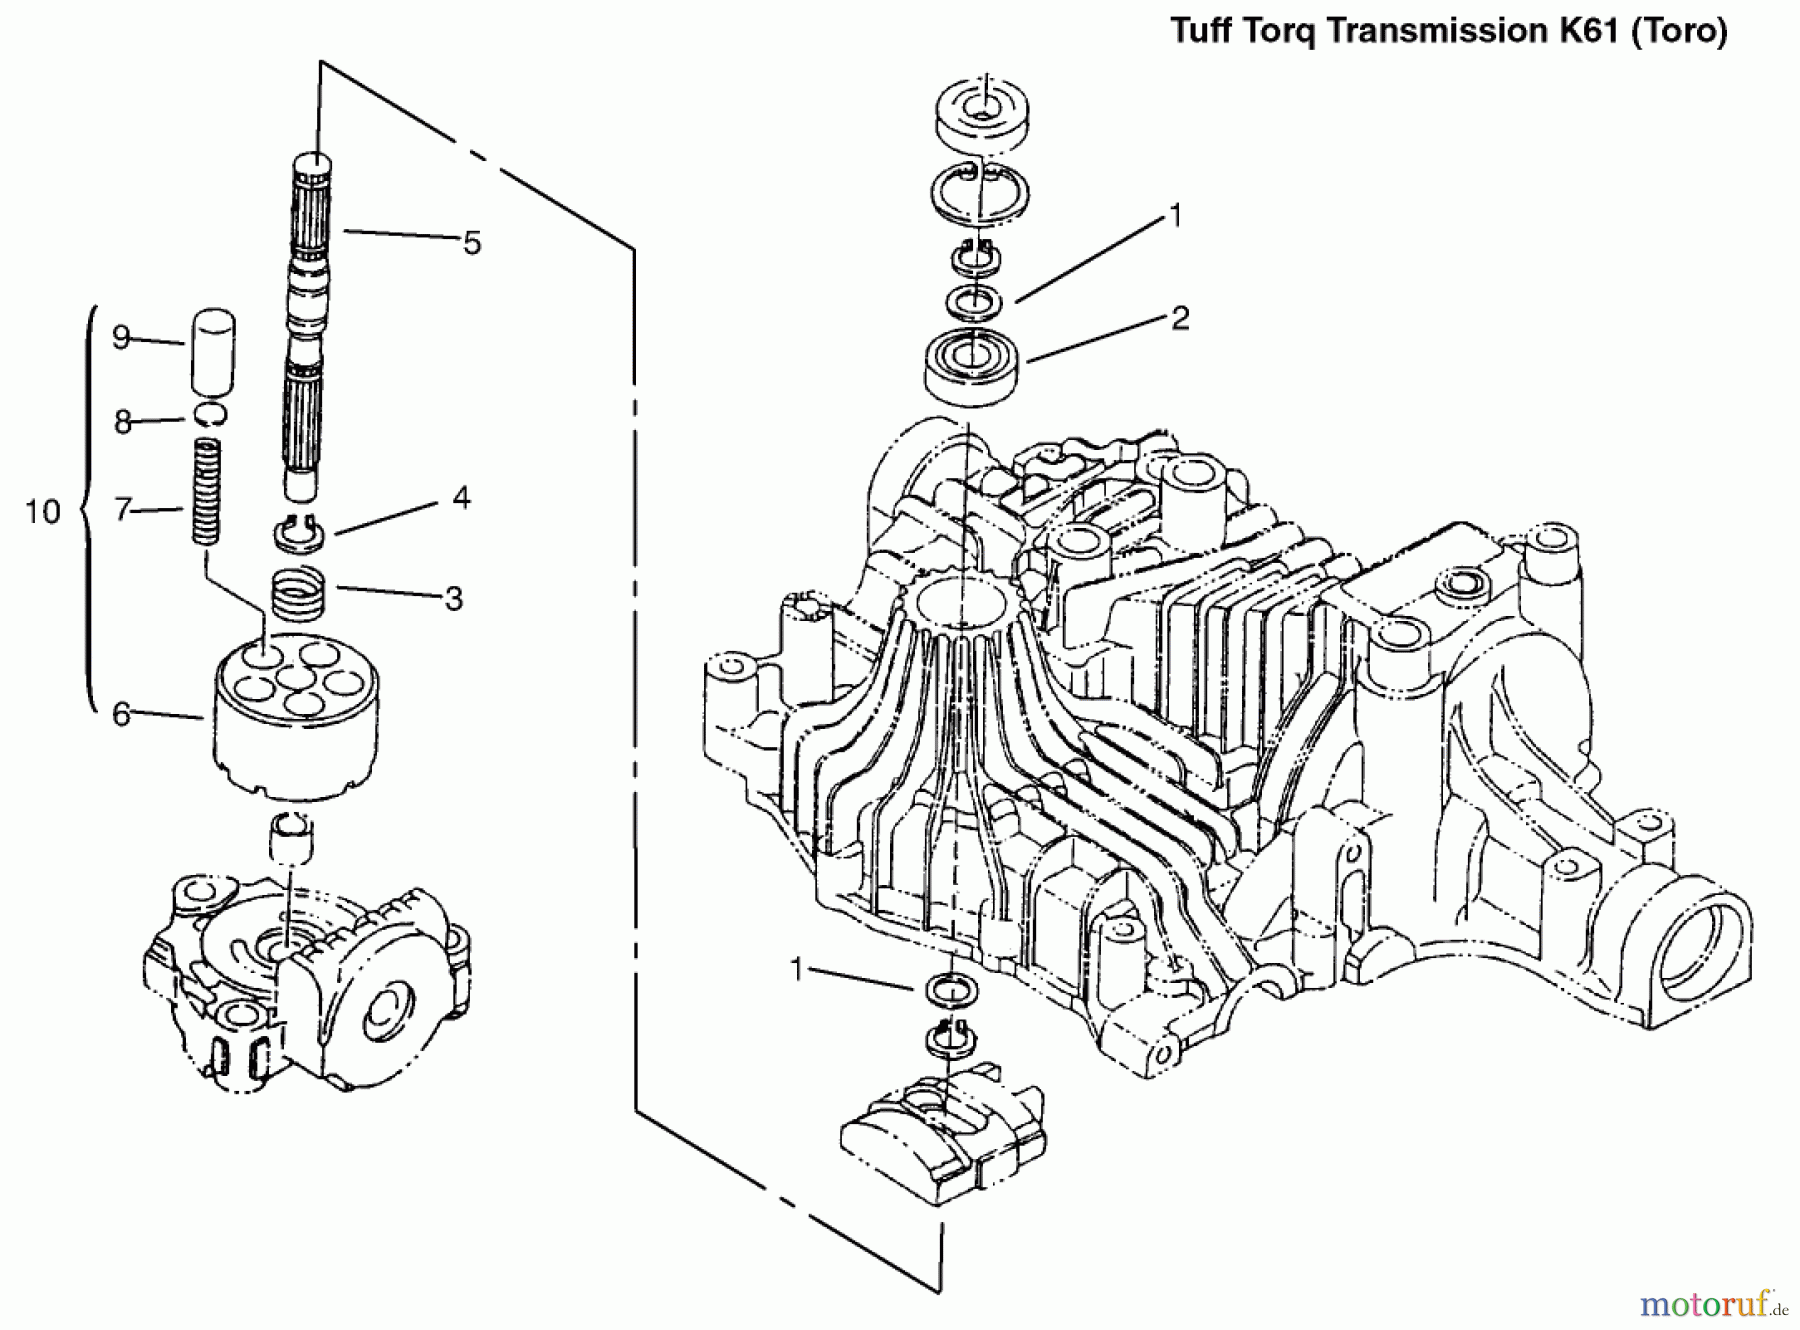  Toro Neu Mowers, Lawn & Garden Tractor Seite 1 72110 (270-H) - Toro 270-H Lawn and Garden Tractor, 1996 (6900001-6999999) PUMP SHAFT